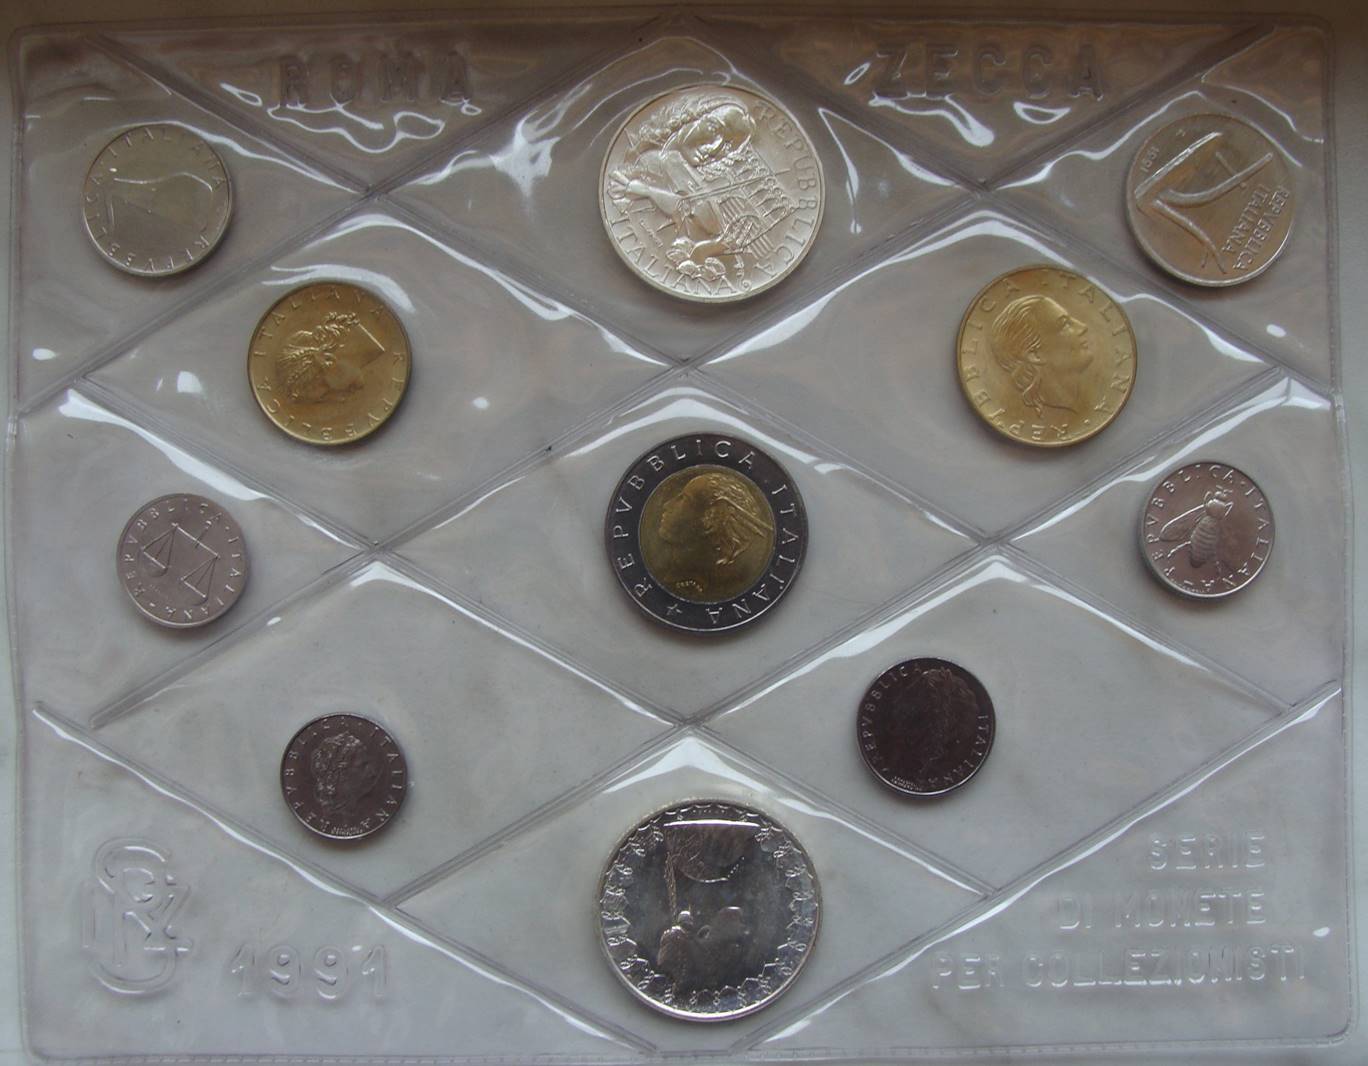 Włochy - set monet 1991 (11) - 2 srebrne